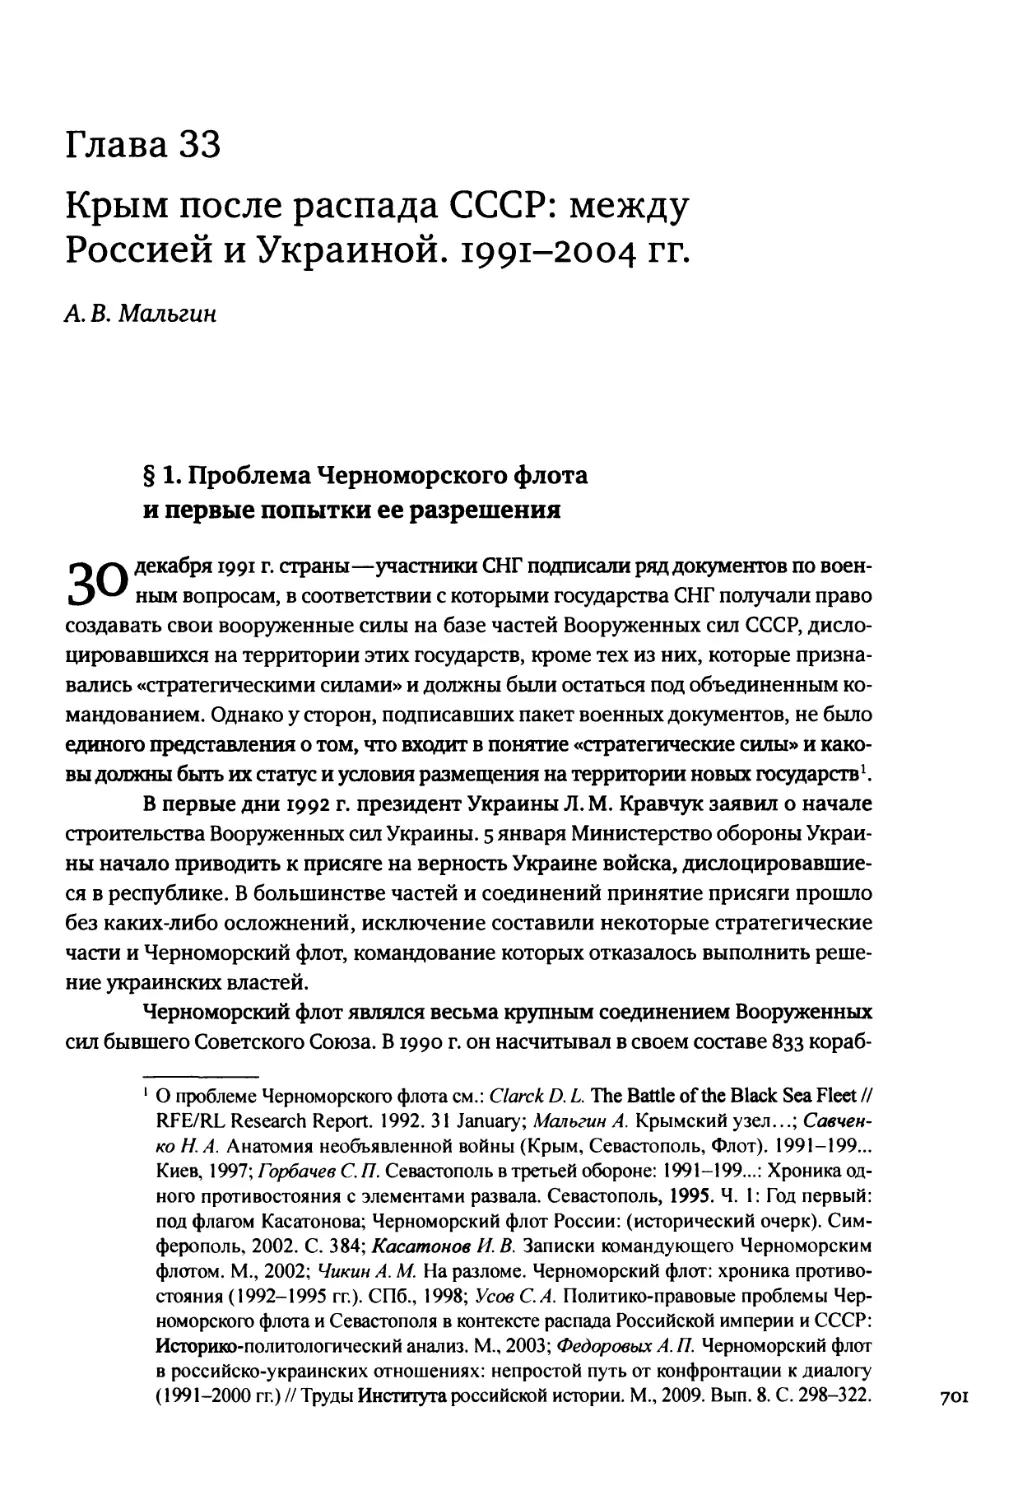 Глава 33. Крым после распада СССР: между Россией и Украиной. 1991-2004 гг